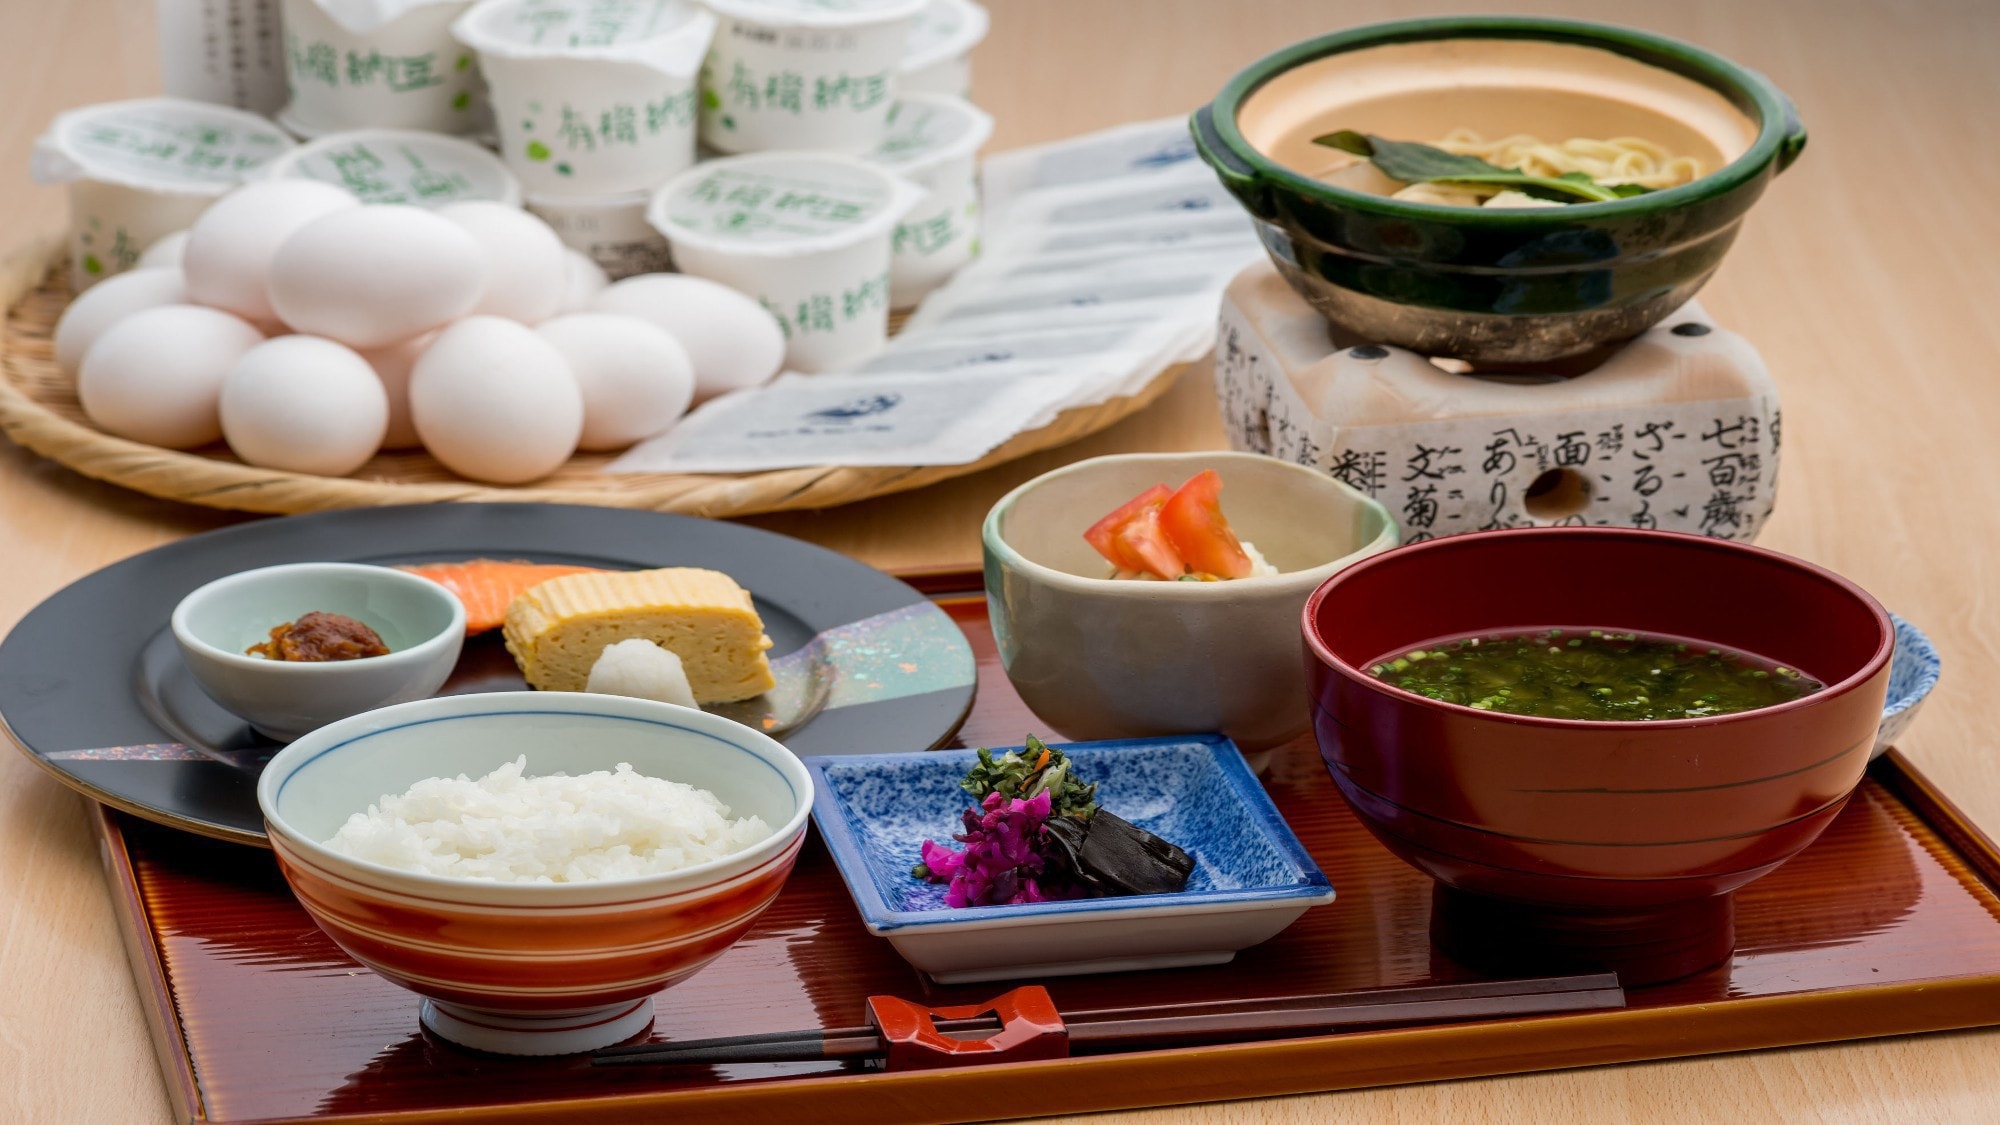  [อาหารเช้า / อาหารญี่ปุ่น] ไข่สดมากมาย นัตโตะ และสาหร่ายทะเล อาหารเช้าแบบญี่ปุ่นกับข้าวหุงใหม่